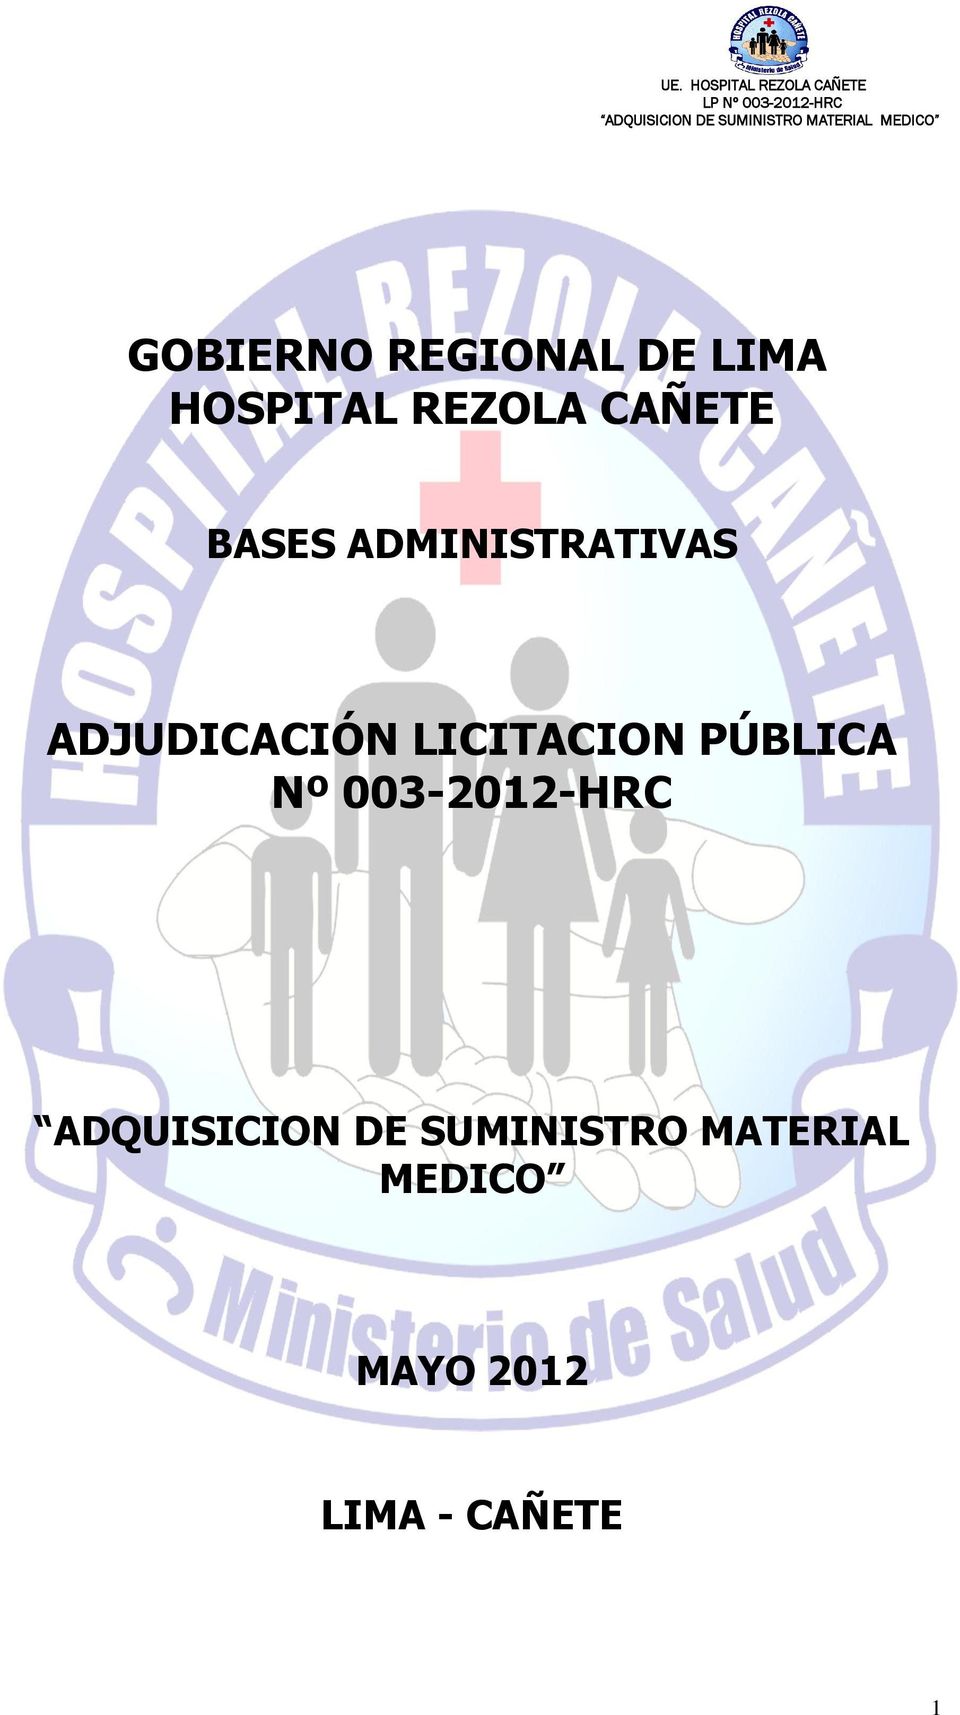 LICITACION PÚBLICA Nº 003-2012-HRC ADQUISICION